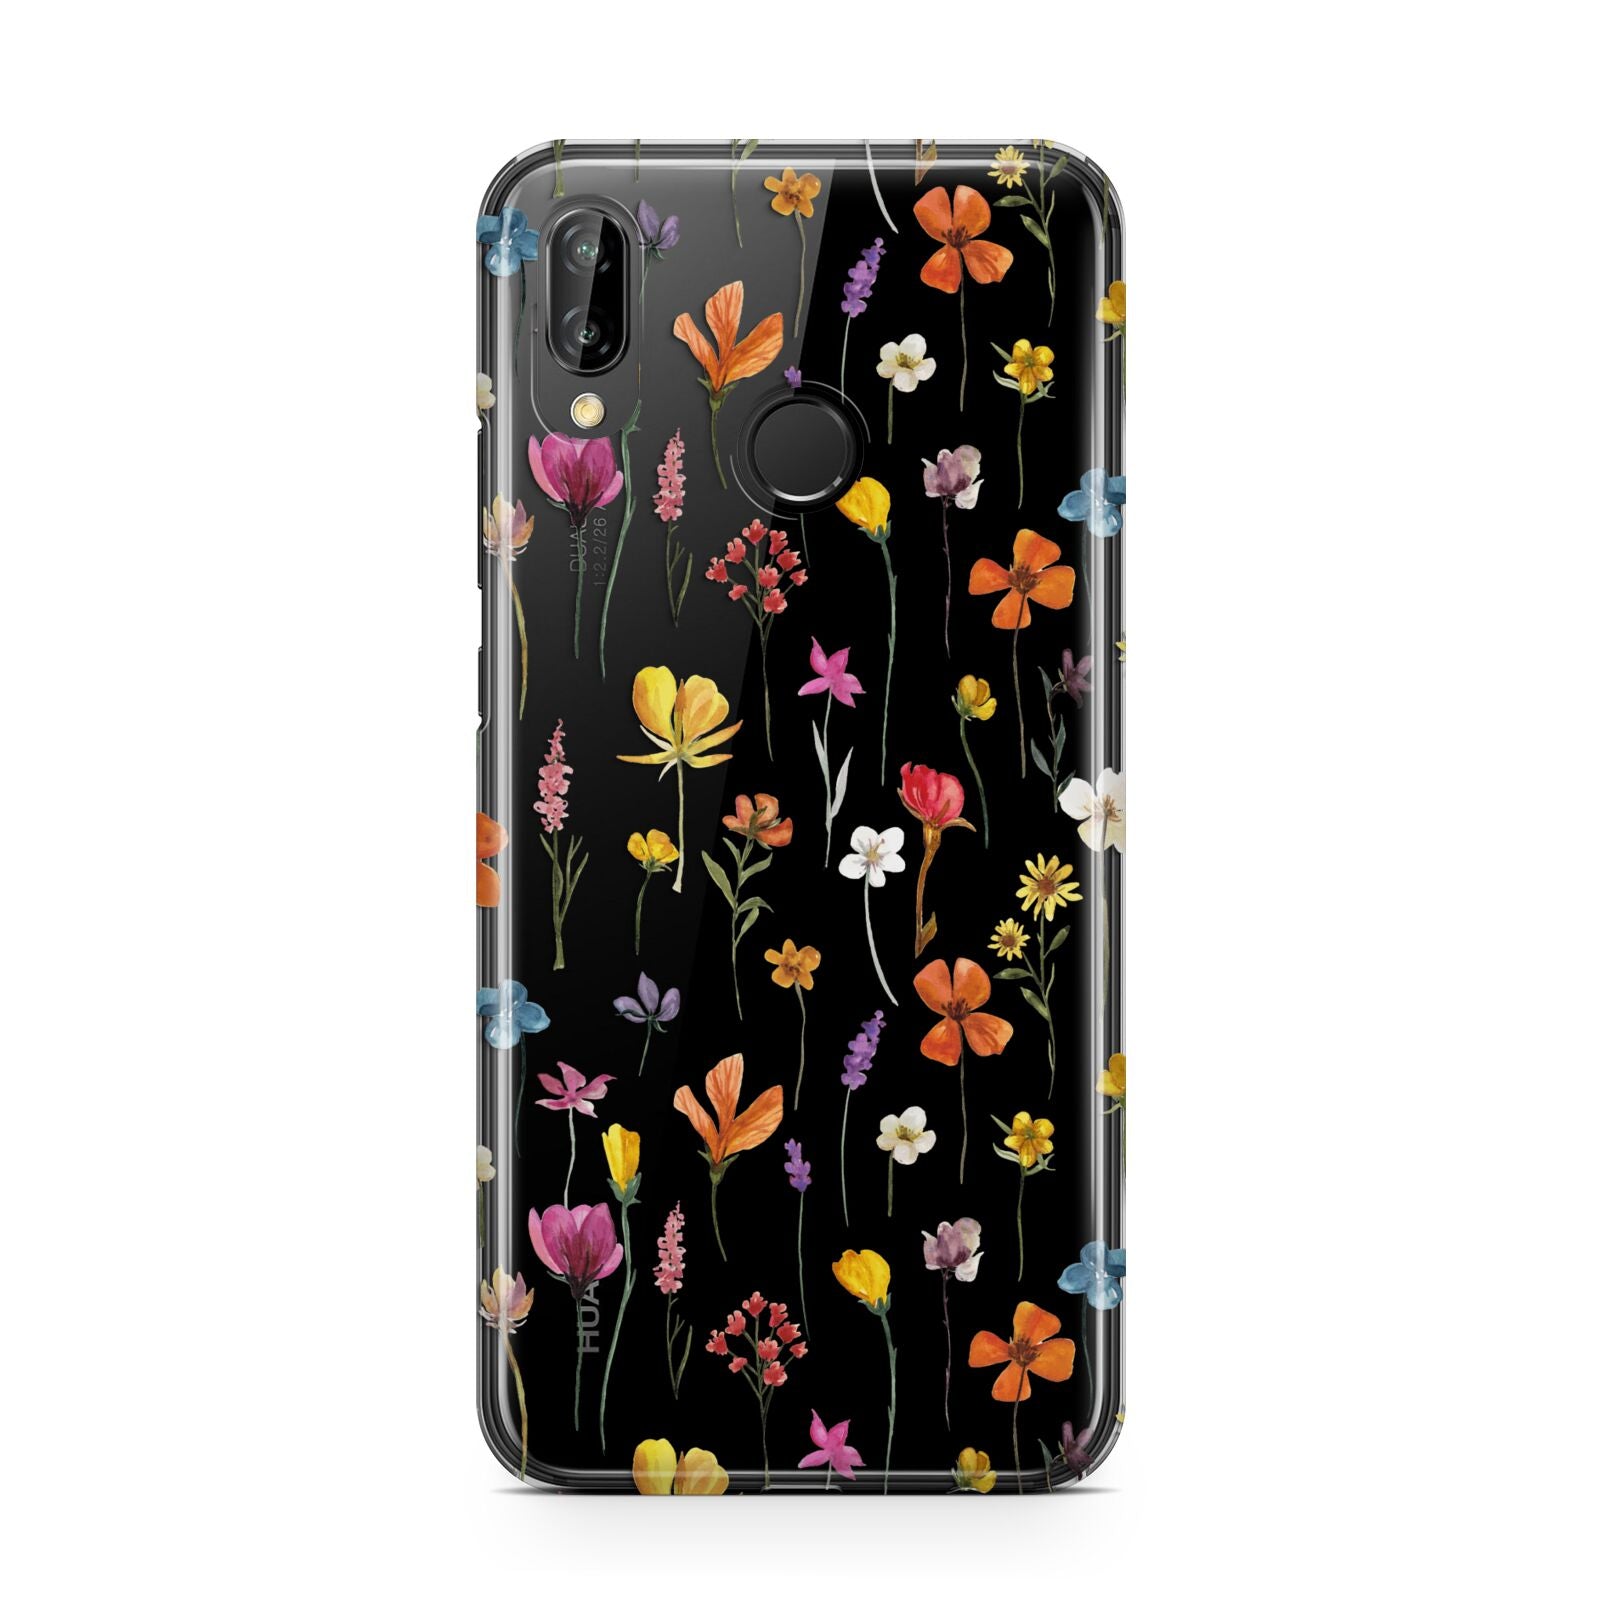 Botanical Floral Huawei P20 Lite Phone Case